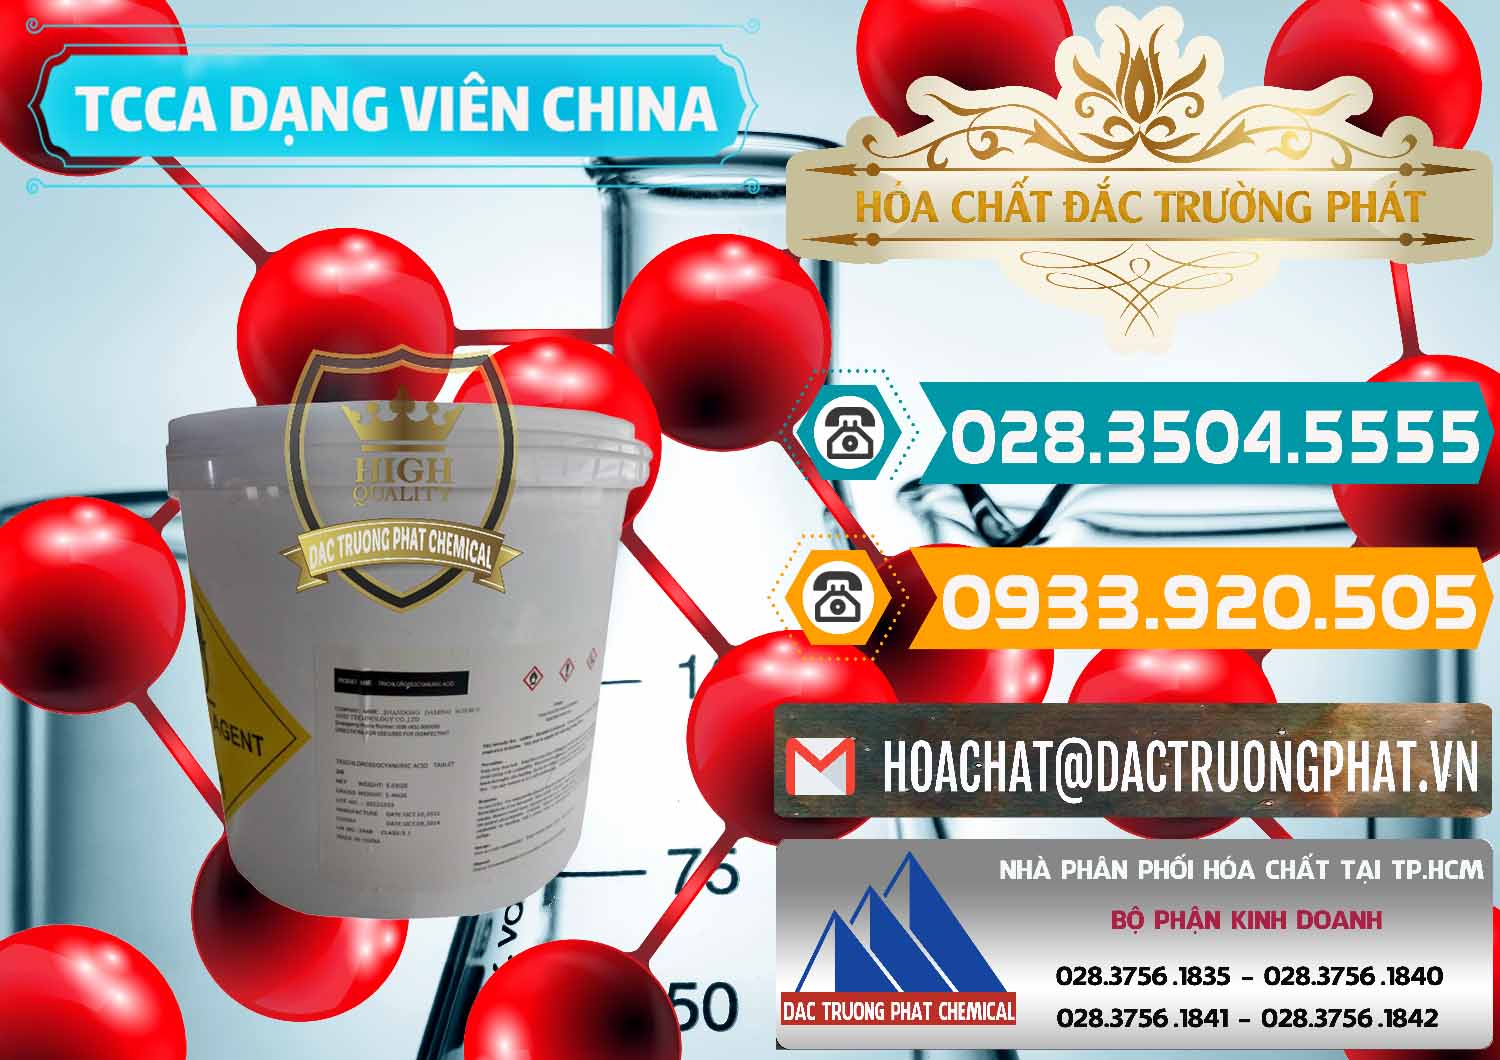 Cty nhập khẩu - bán TCCA - Acid Trichloroisocyanuric Dạng Viên Thùng 5kg Trung Quốc China - 0379 - Công ty chuyên phân phối - cung ứng hóa chất tại TP.HCM - congtyhoachat.vn